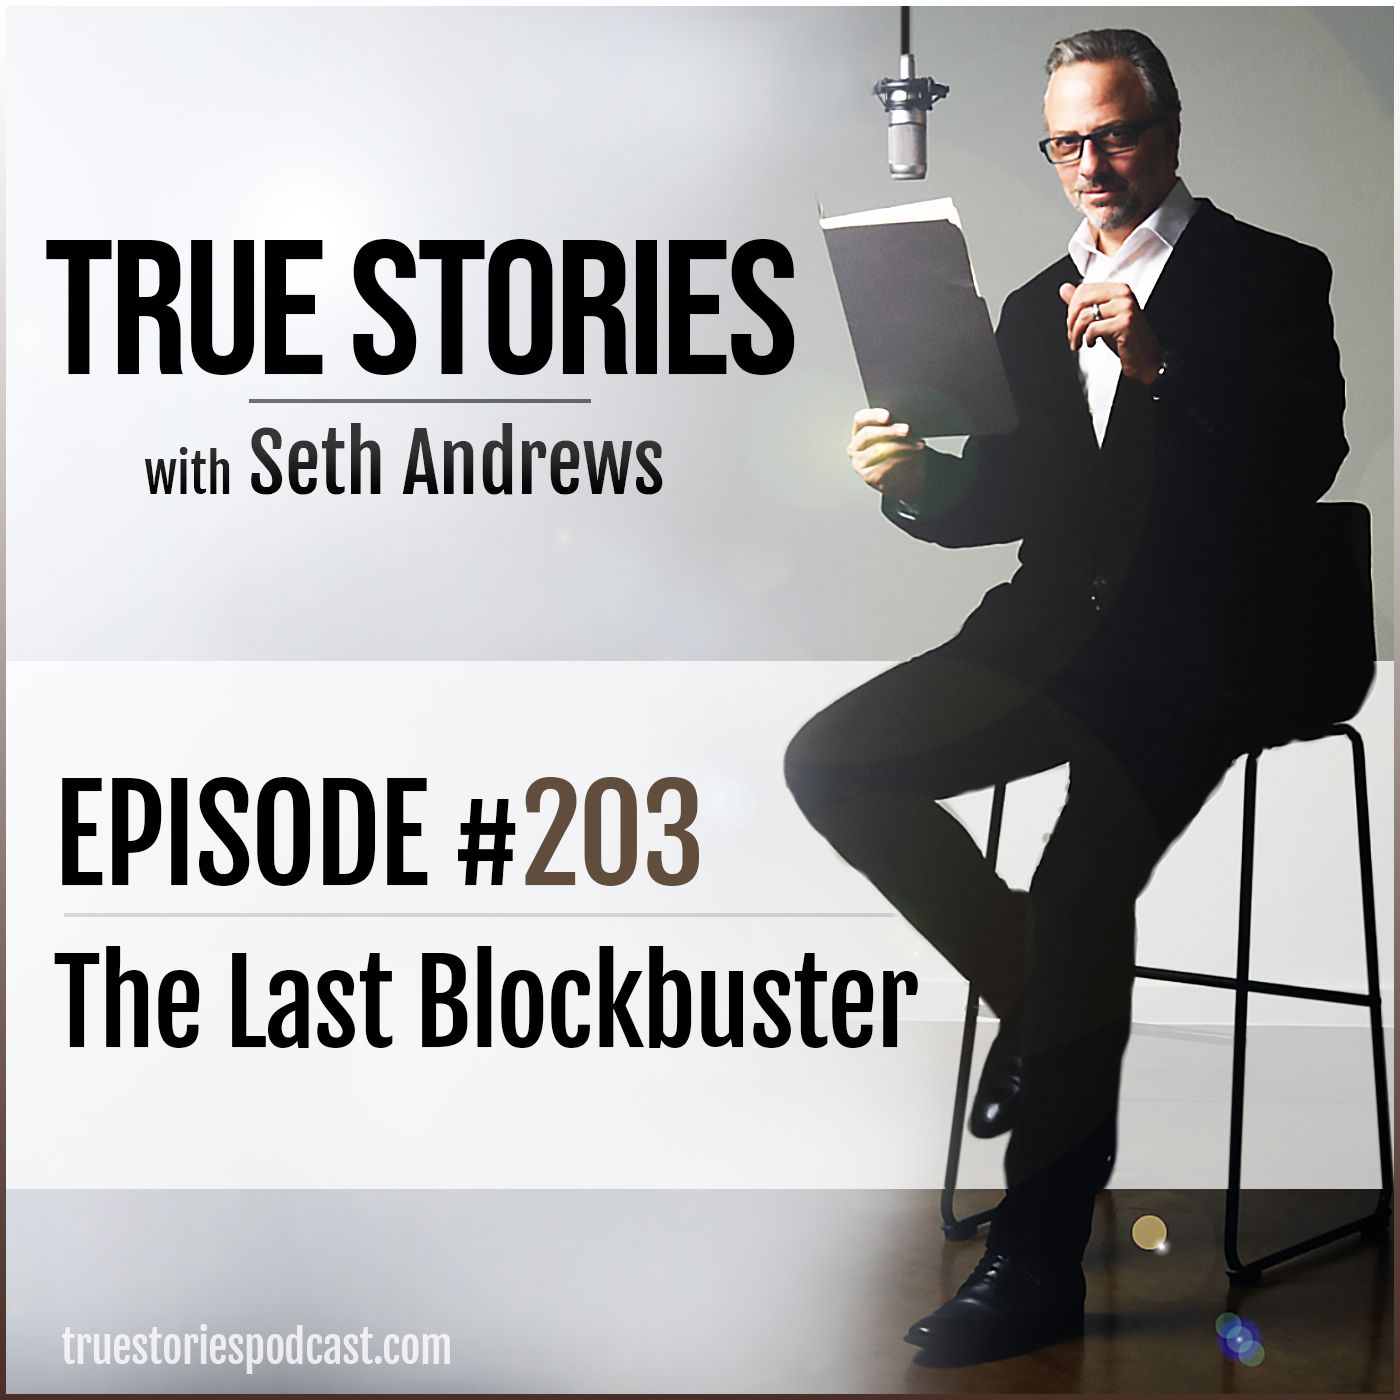 True Stories #203 - The Last Blockbuster